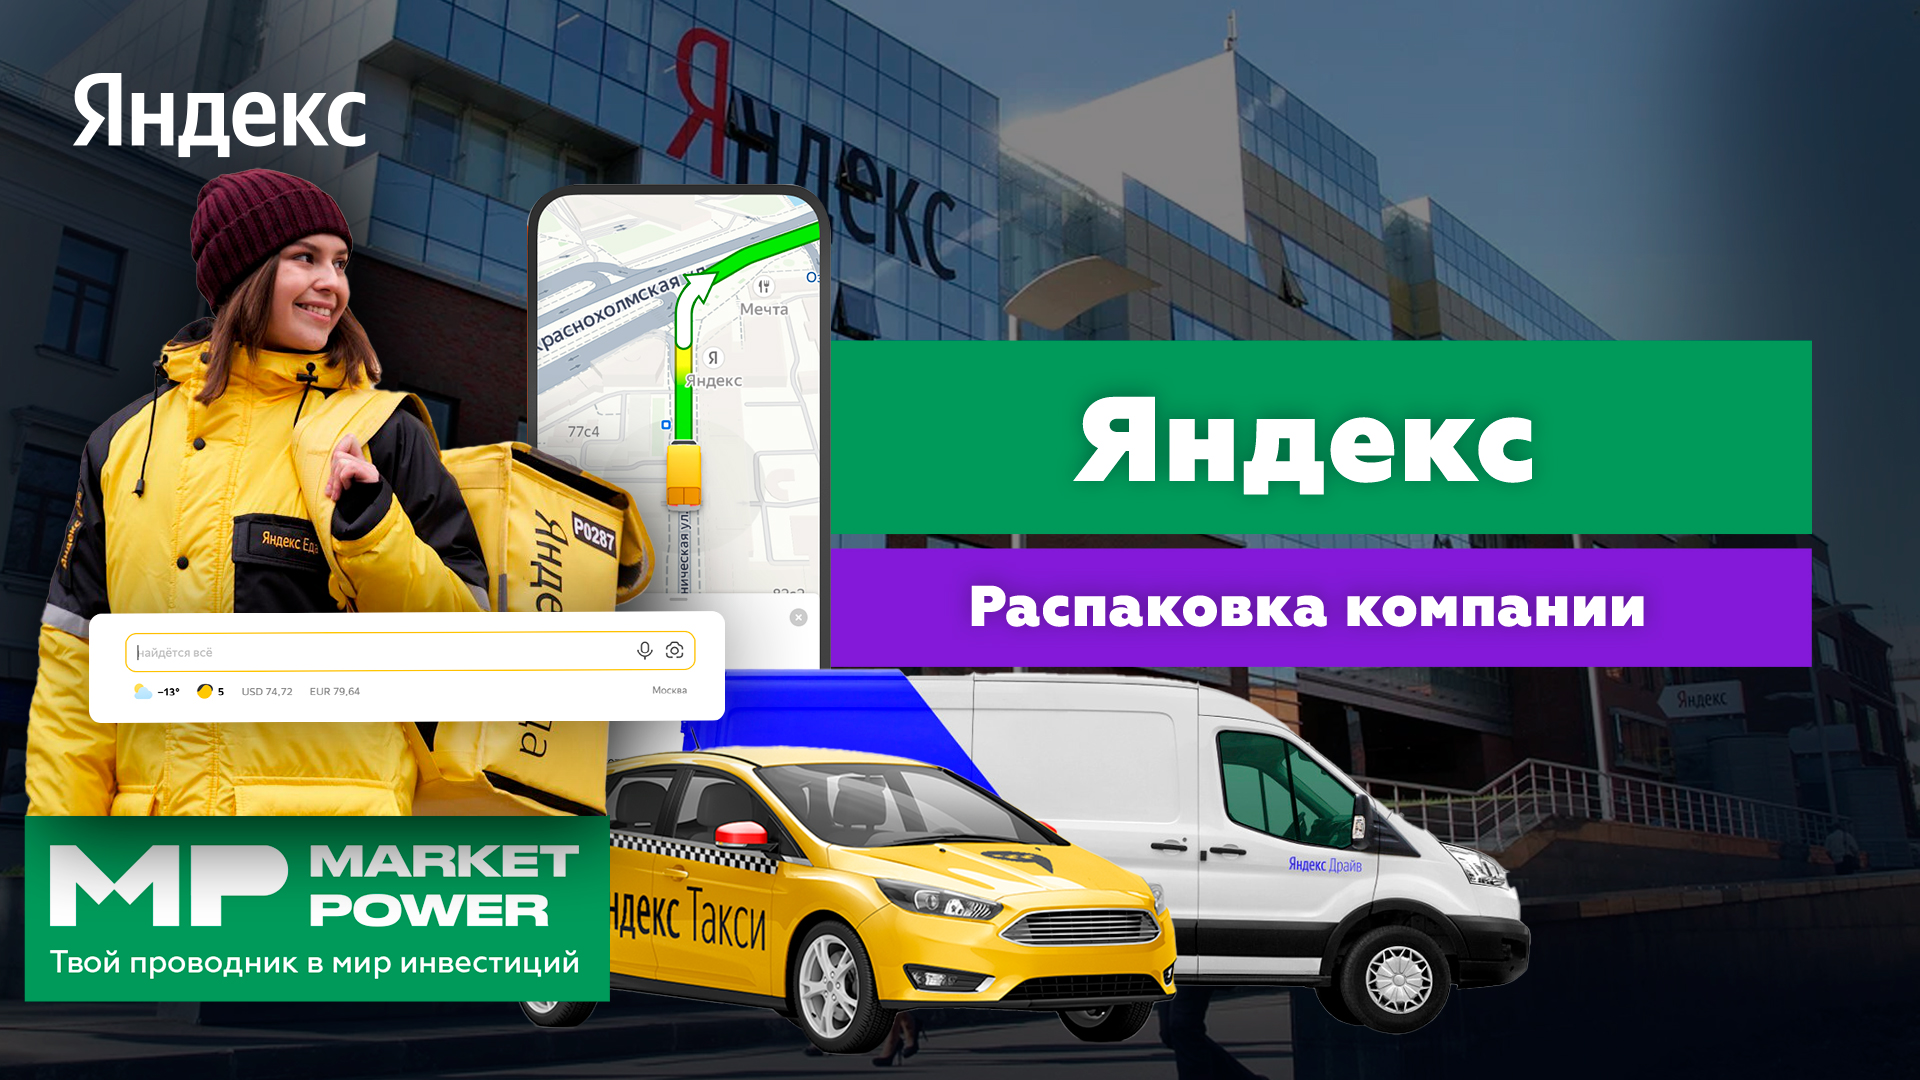 Акции Яндекса I Самая популярная поисковая система I Реклама, почта подписки, такси и доставка еды